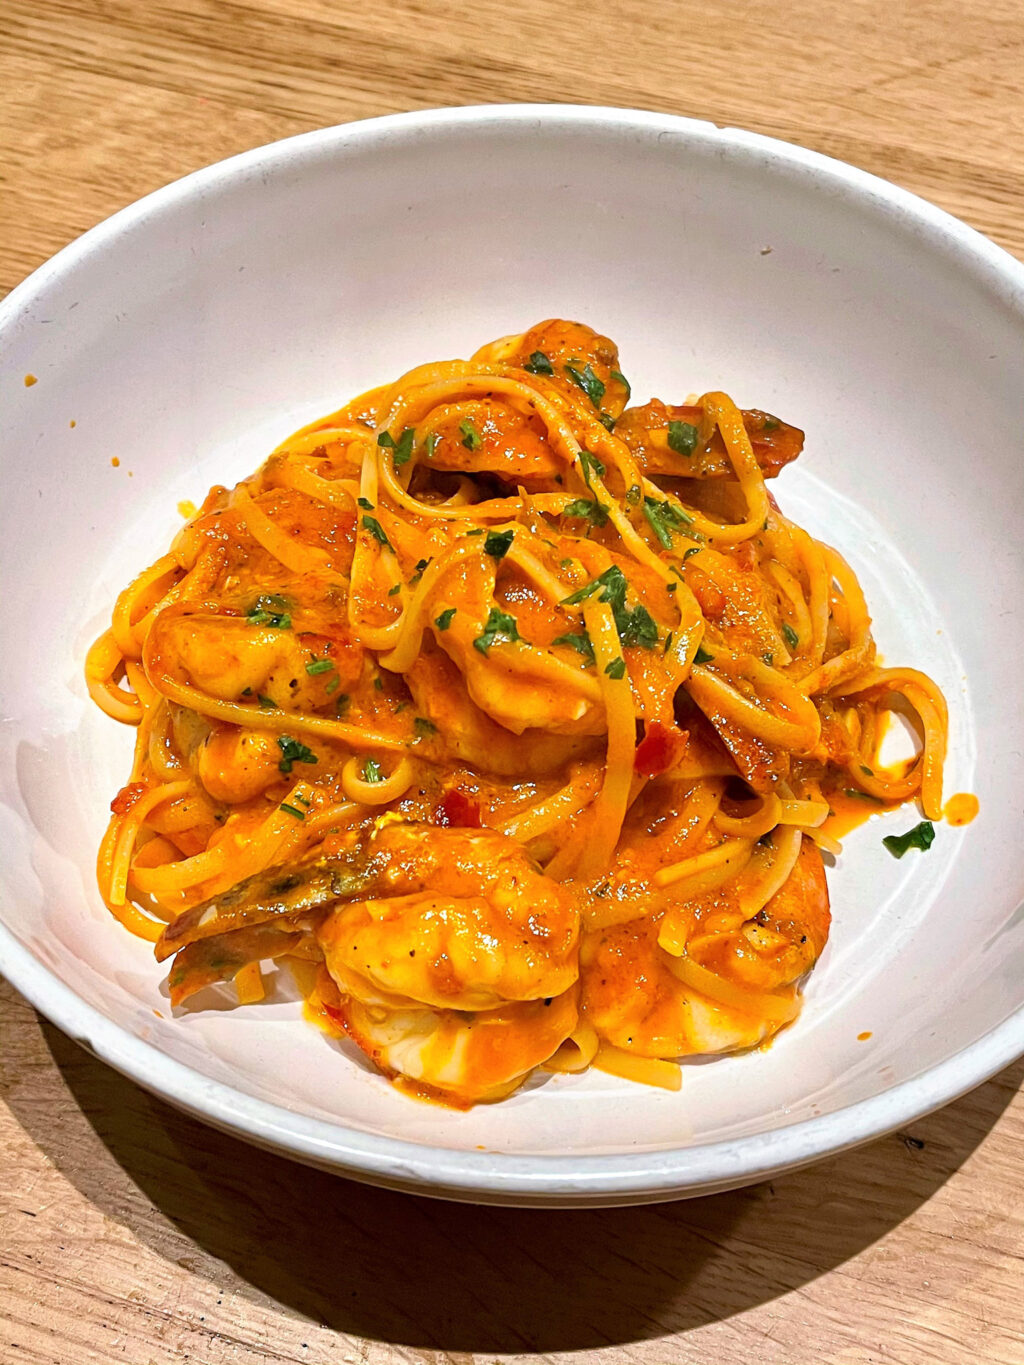 Spicy shrimp pasta